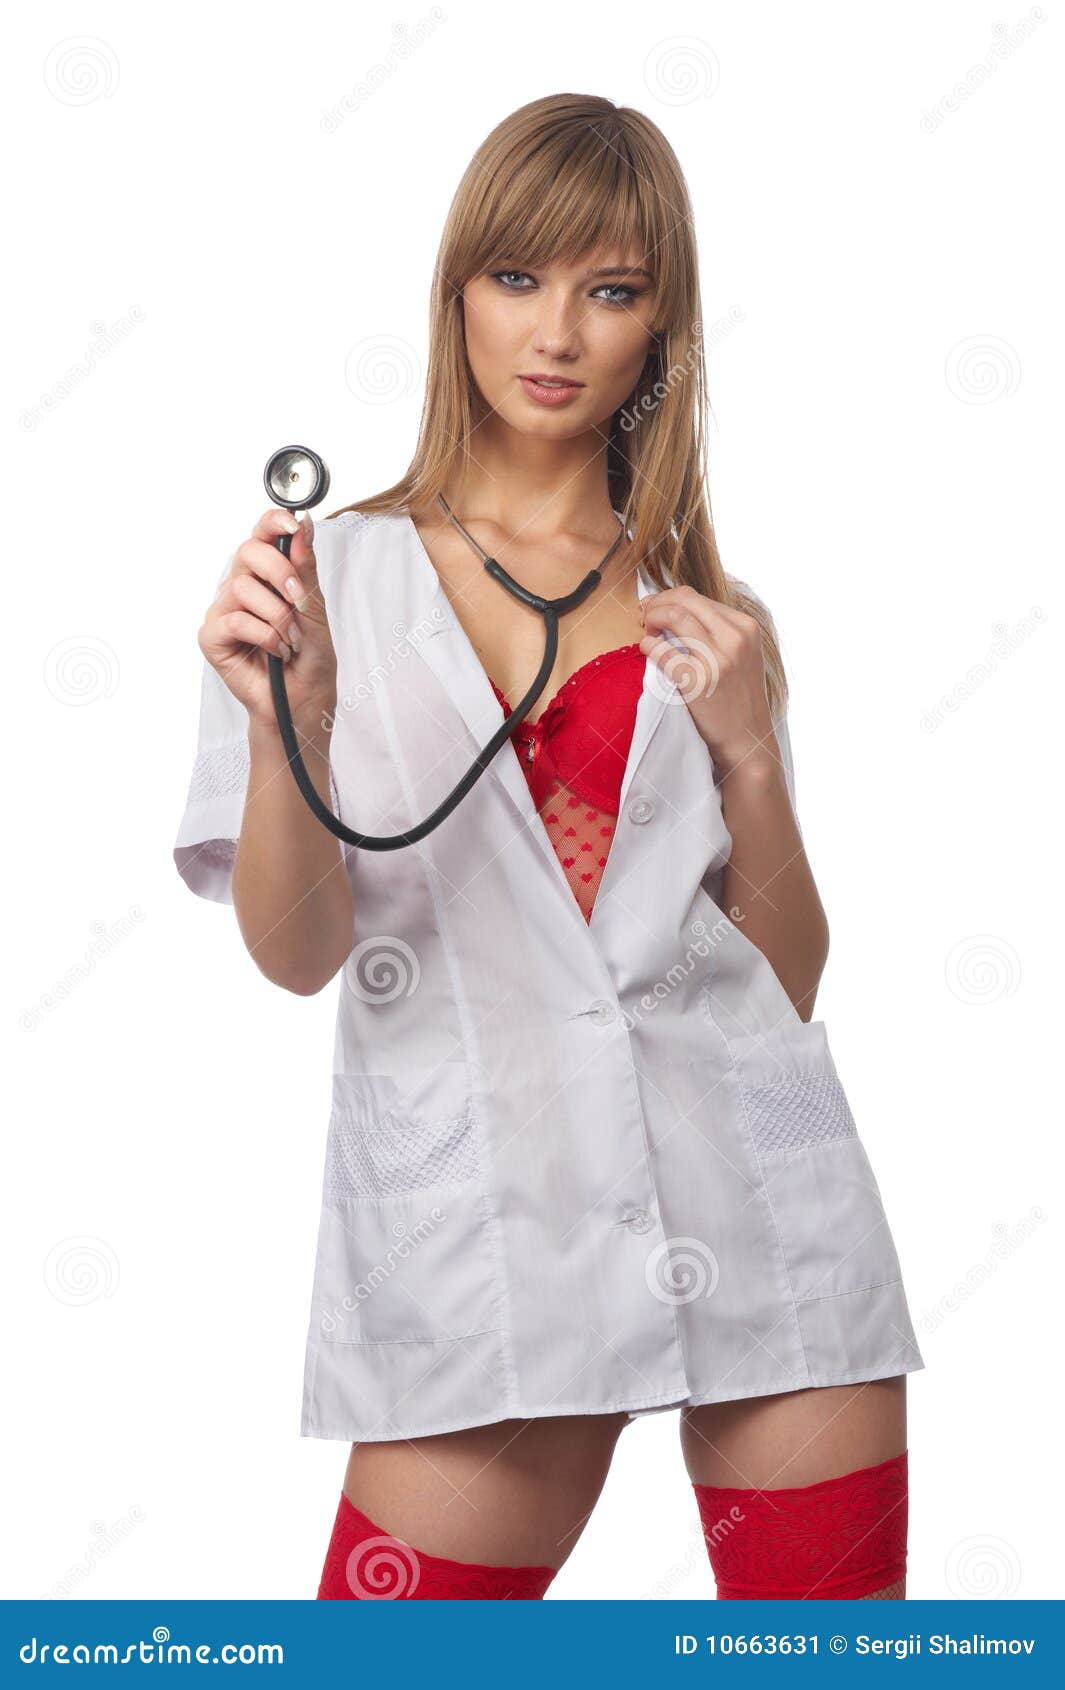 Sexy Nurse Stock Image Image 10663631